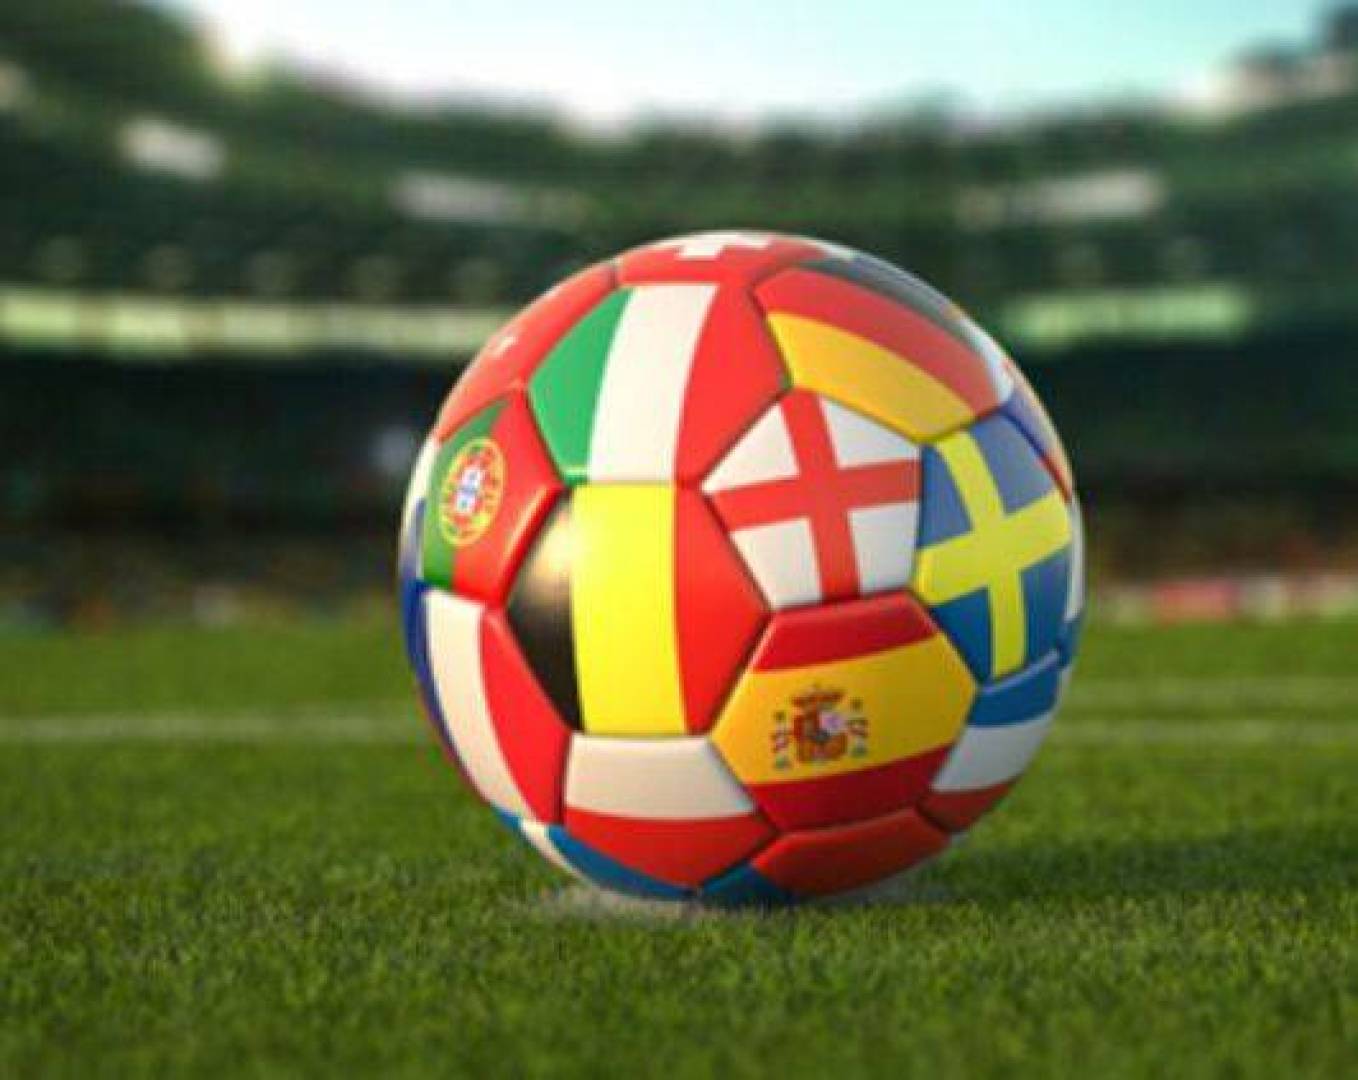 القنوات الناقلة لمباريات اليوم الخميس في الملاعب العالمية وموعدها بالتفصيل